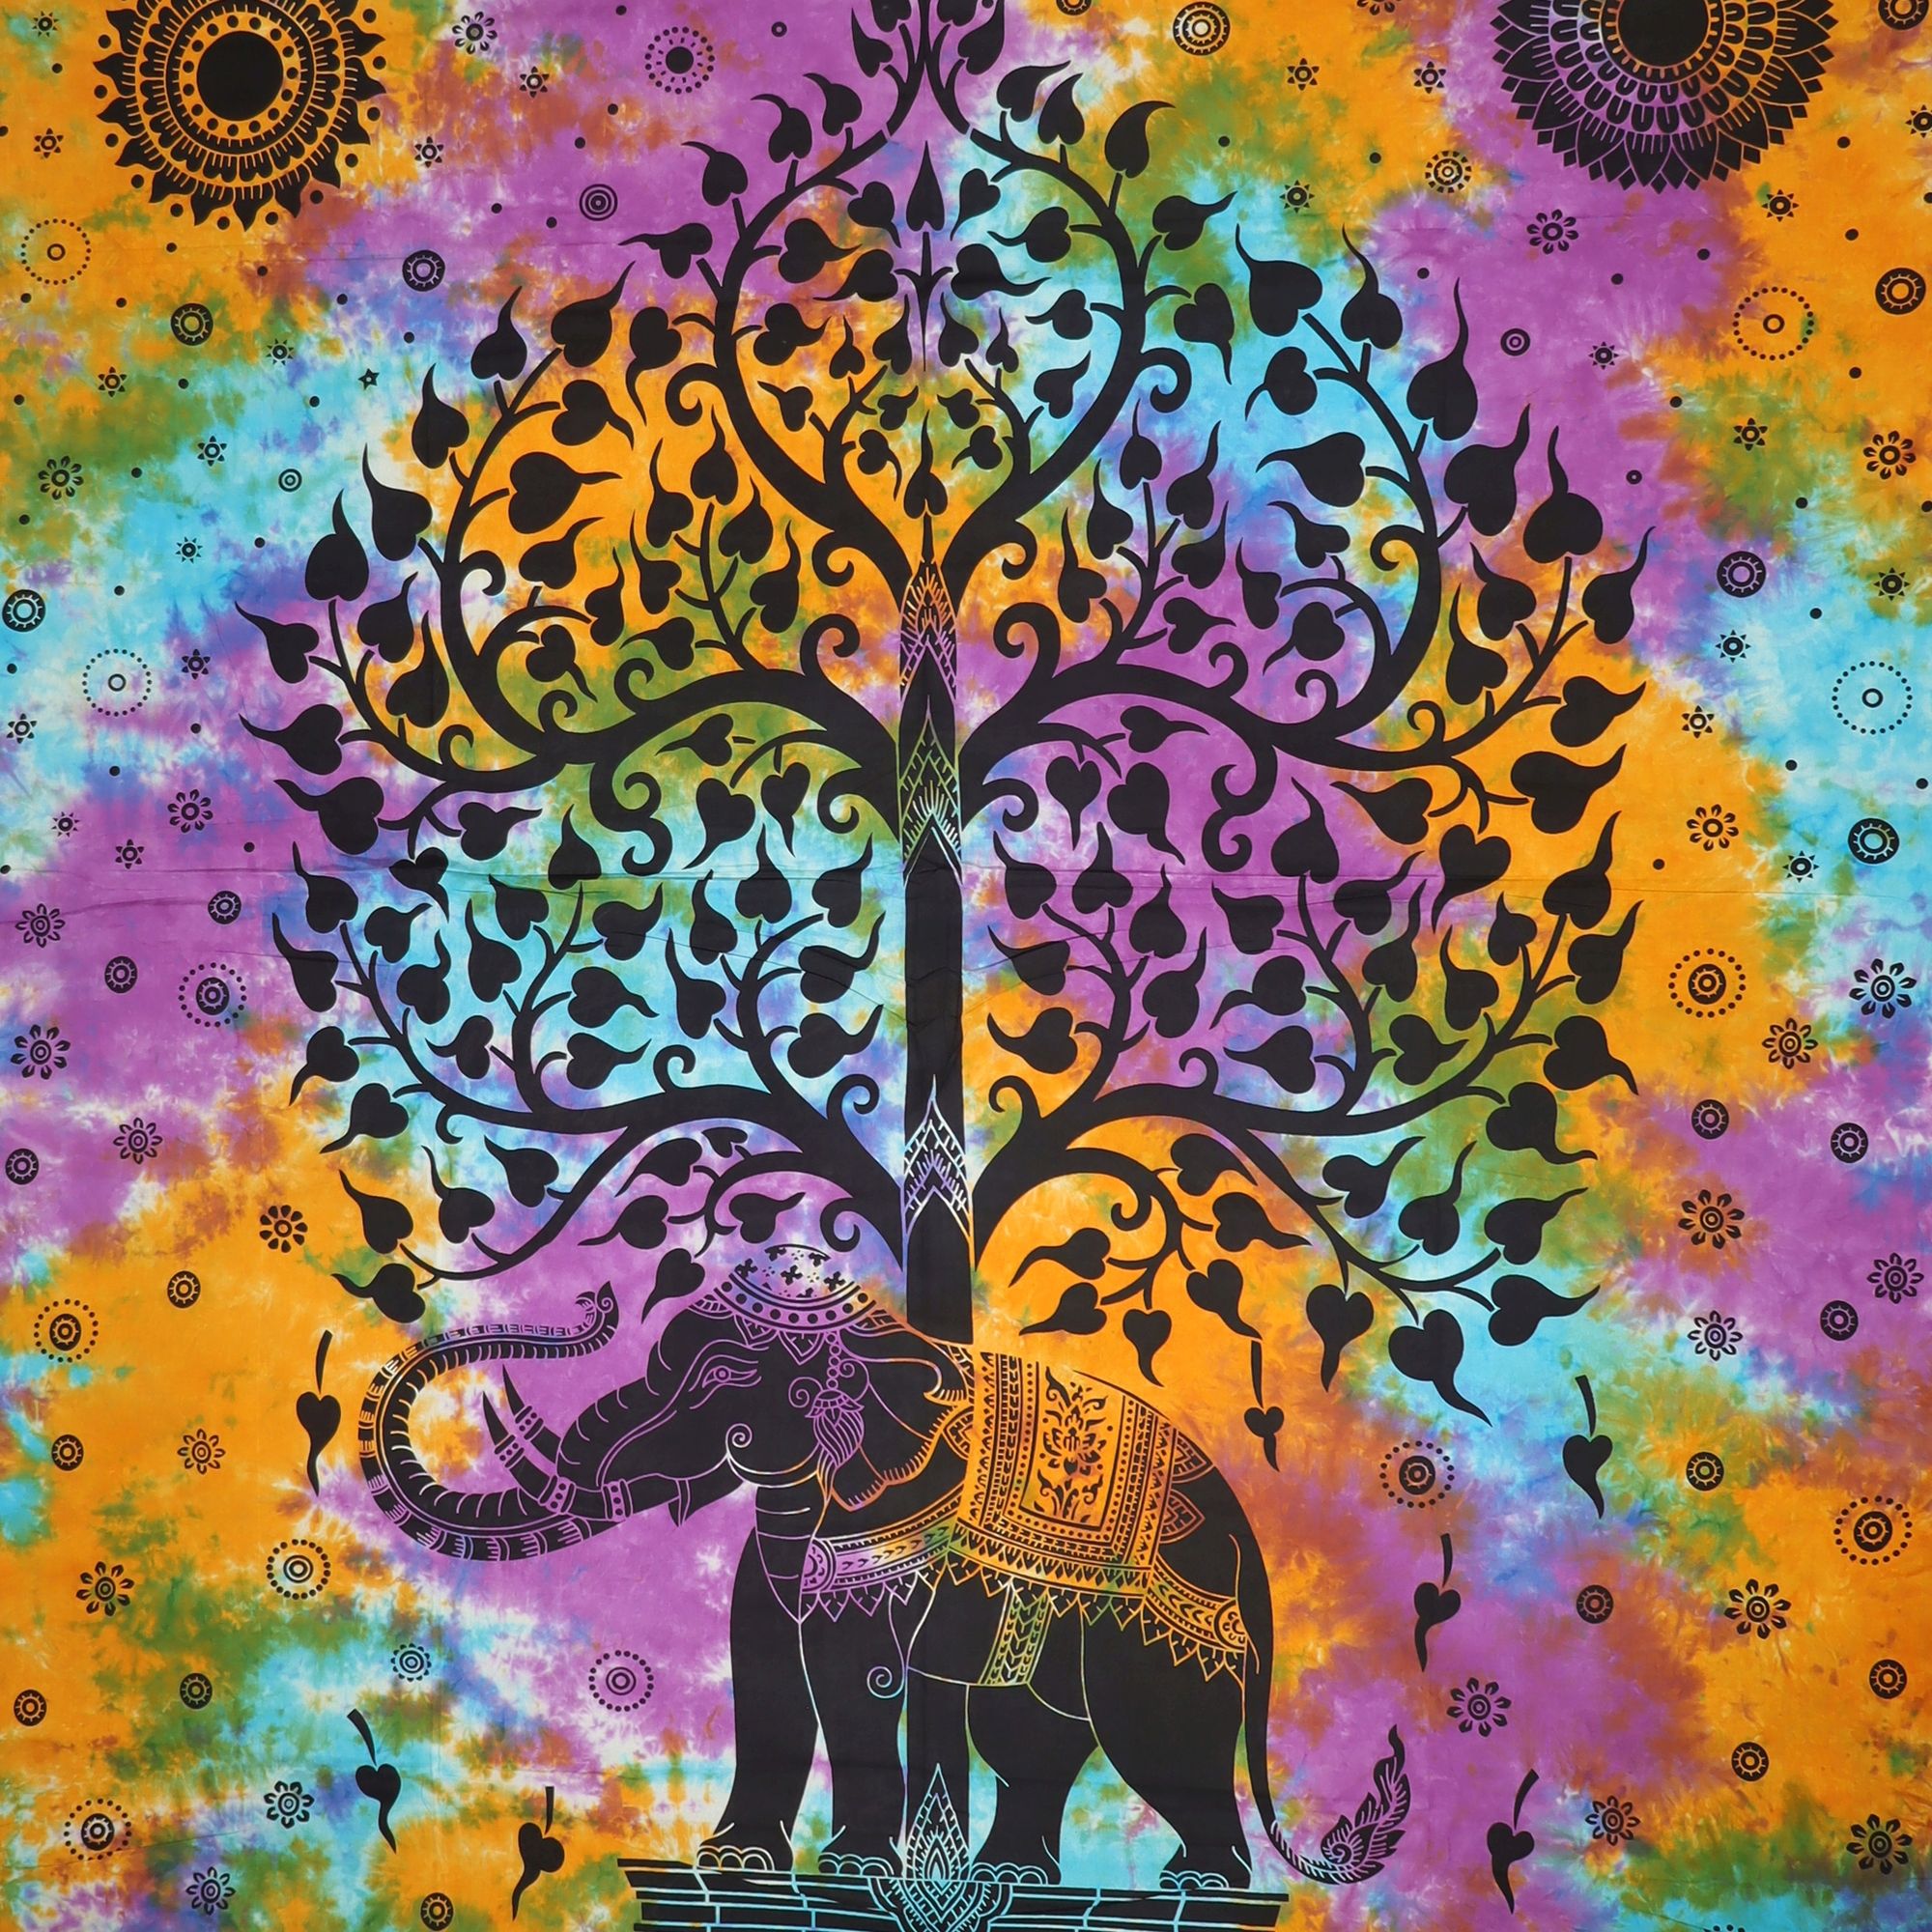 Wandtuch XXL 210x230 - Baum des Lebens und Elefant - 100% Baumwolle - detailreicher indischer Druck - mehrfarbig Batik - dekoratives Tuch, Wandbild, Tagesdecke, Bedcover, Vorhang, Picknick-Decke, Strandtuch